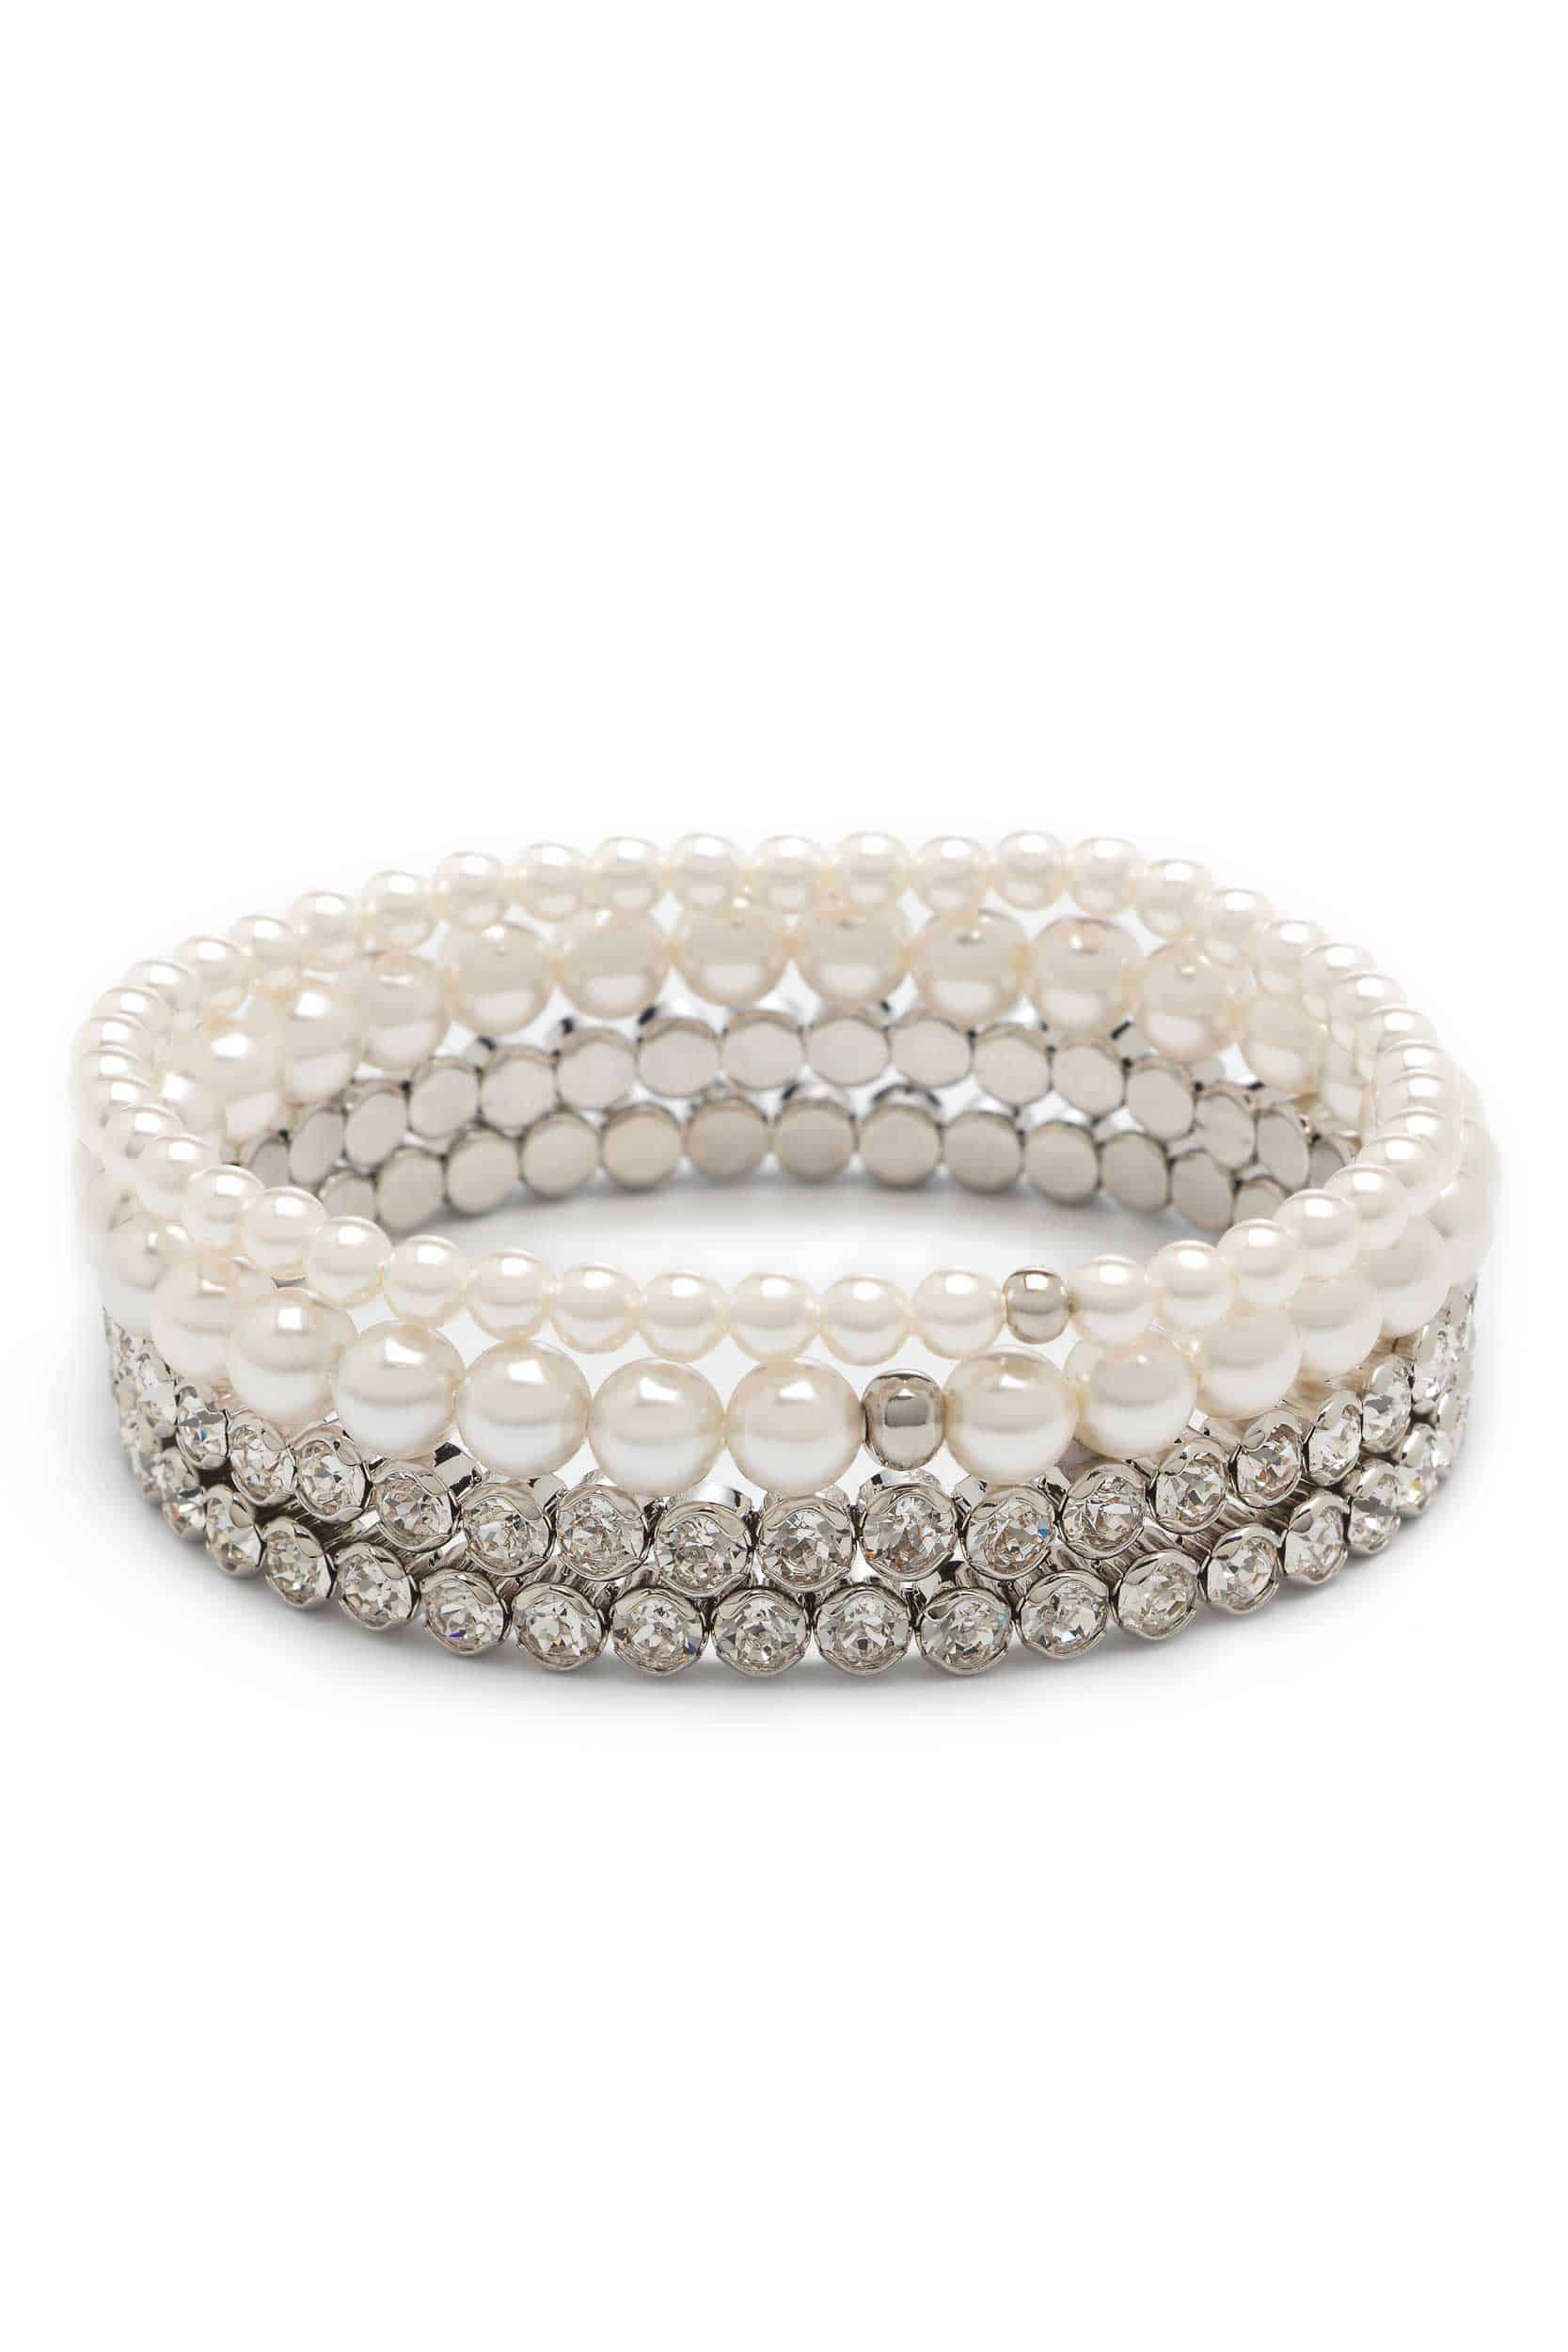 Featured image for “Abrazi Armband | 4-Bracelet-set”